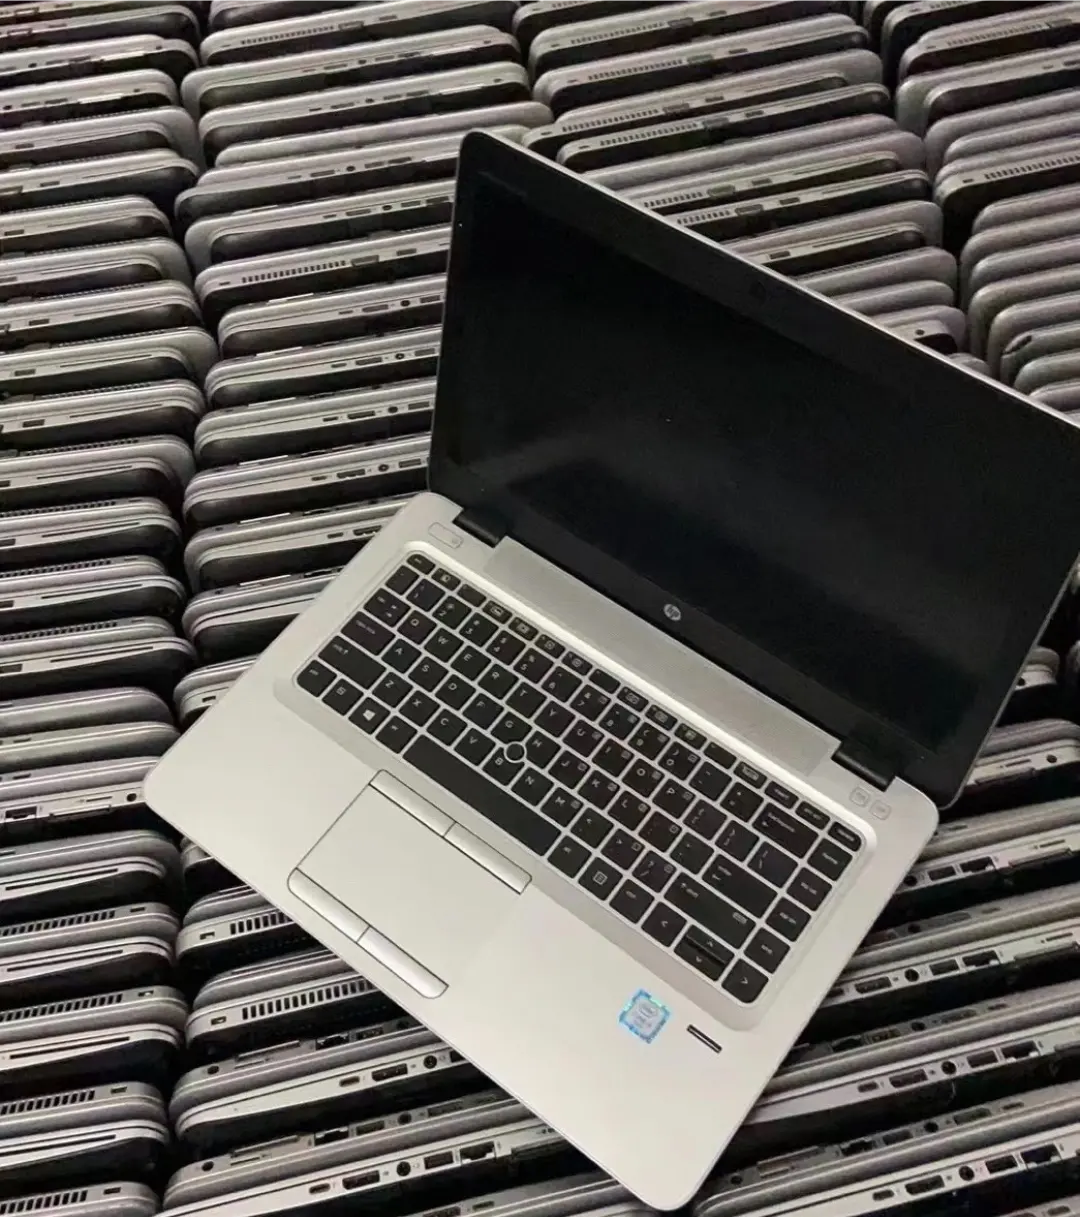 A + Grau Recondicionado Para Hp Probook 840g3 Laptops Core I5 I7 16gb Windows10 Pro Laptop Usado Para Venda Por Atacado Business Notebook